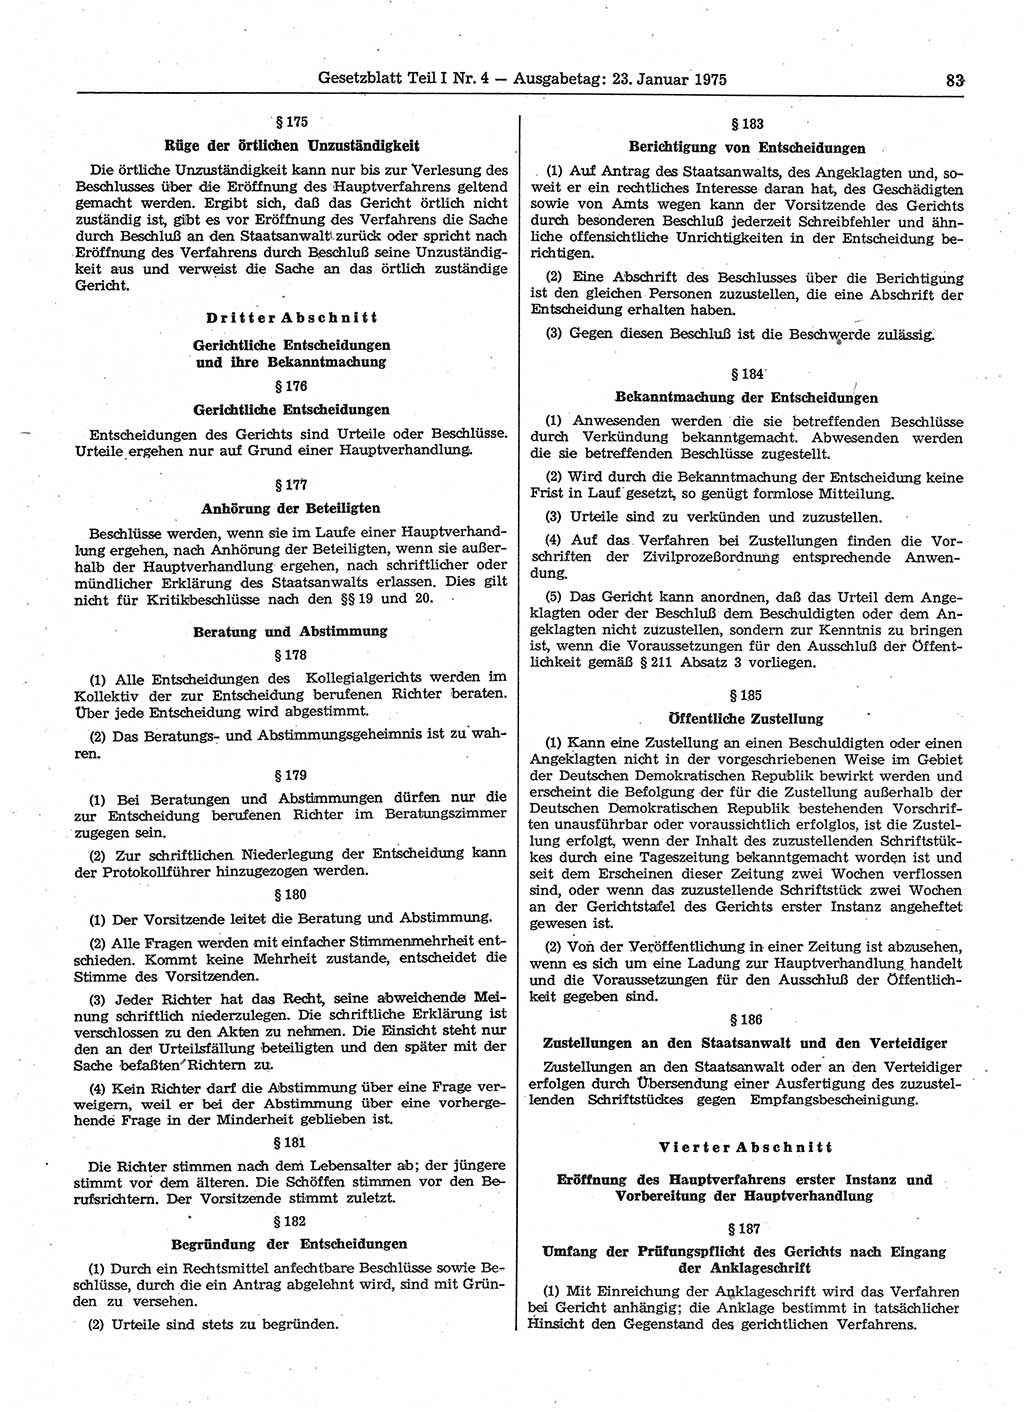 Gesetzblatt (GBl.) der Deutschen Demokratischen Republik (DDR) Teil Ⅰ 1975, Seite 83 (GBl. DDR Ⅰ 1975, S. 83)